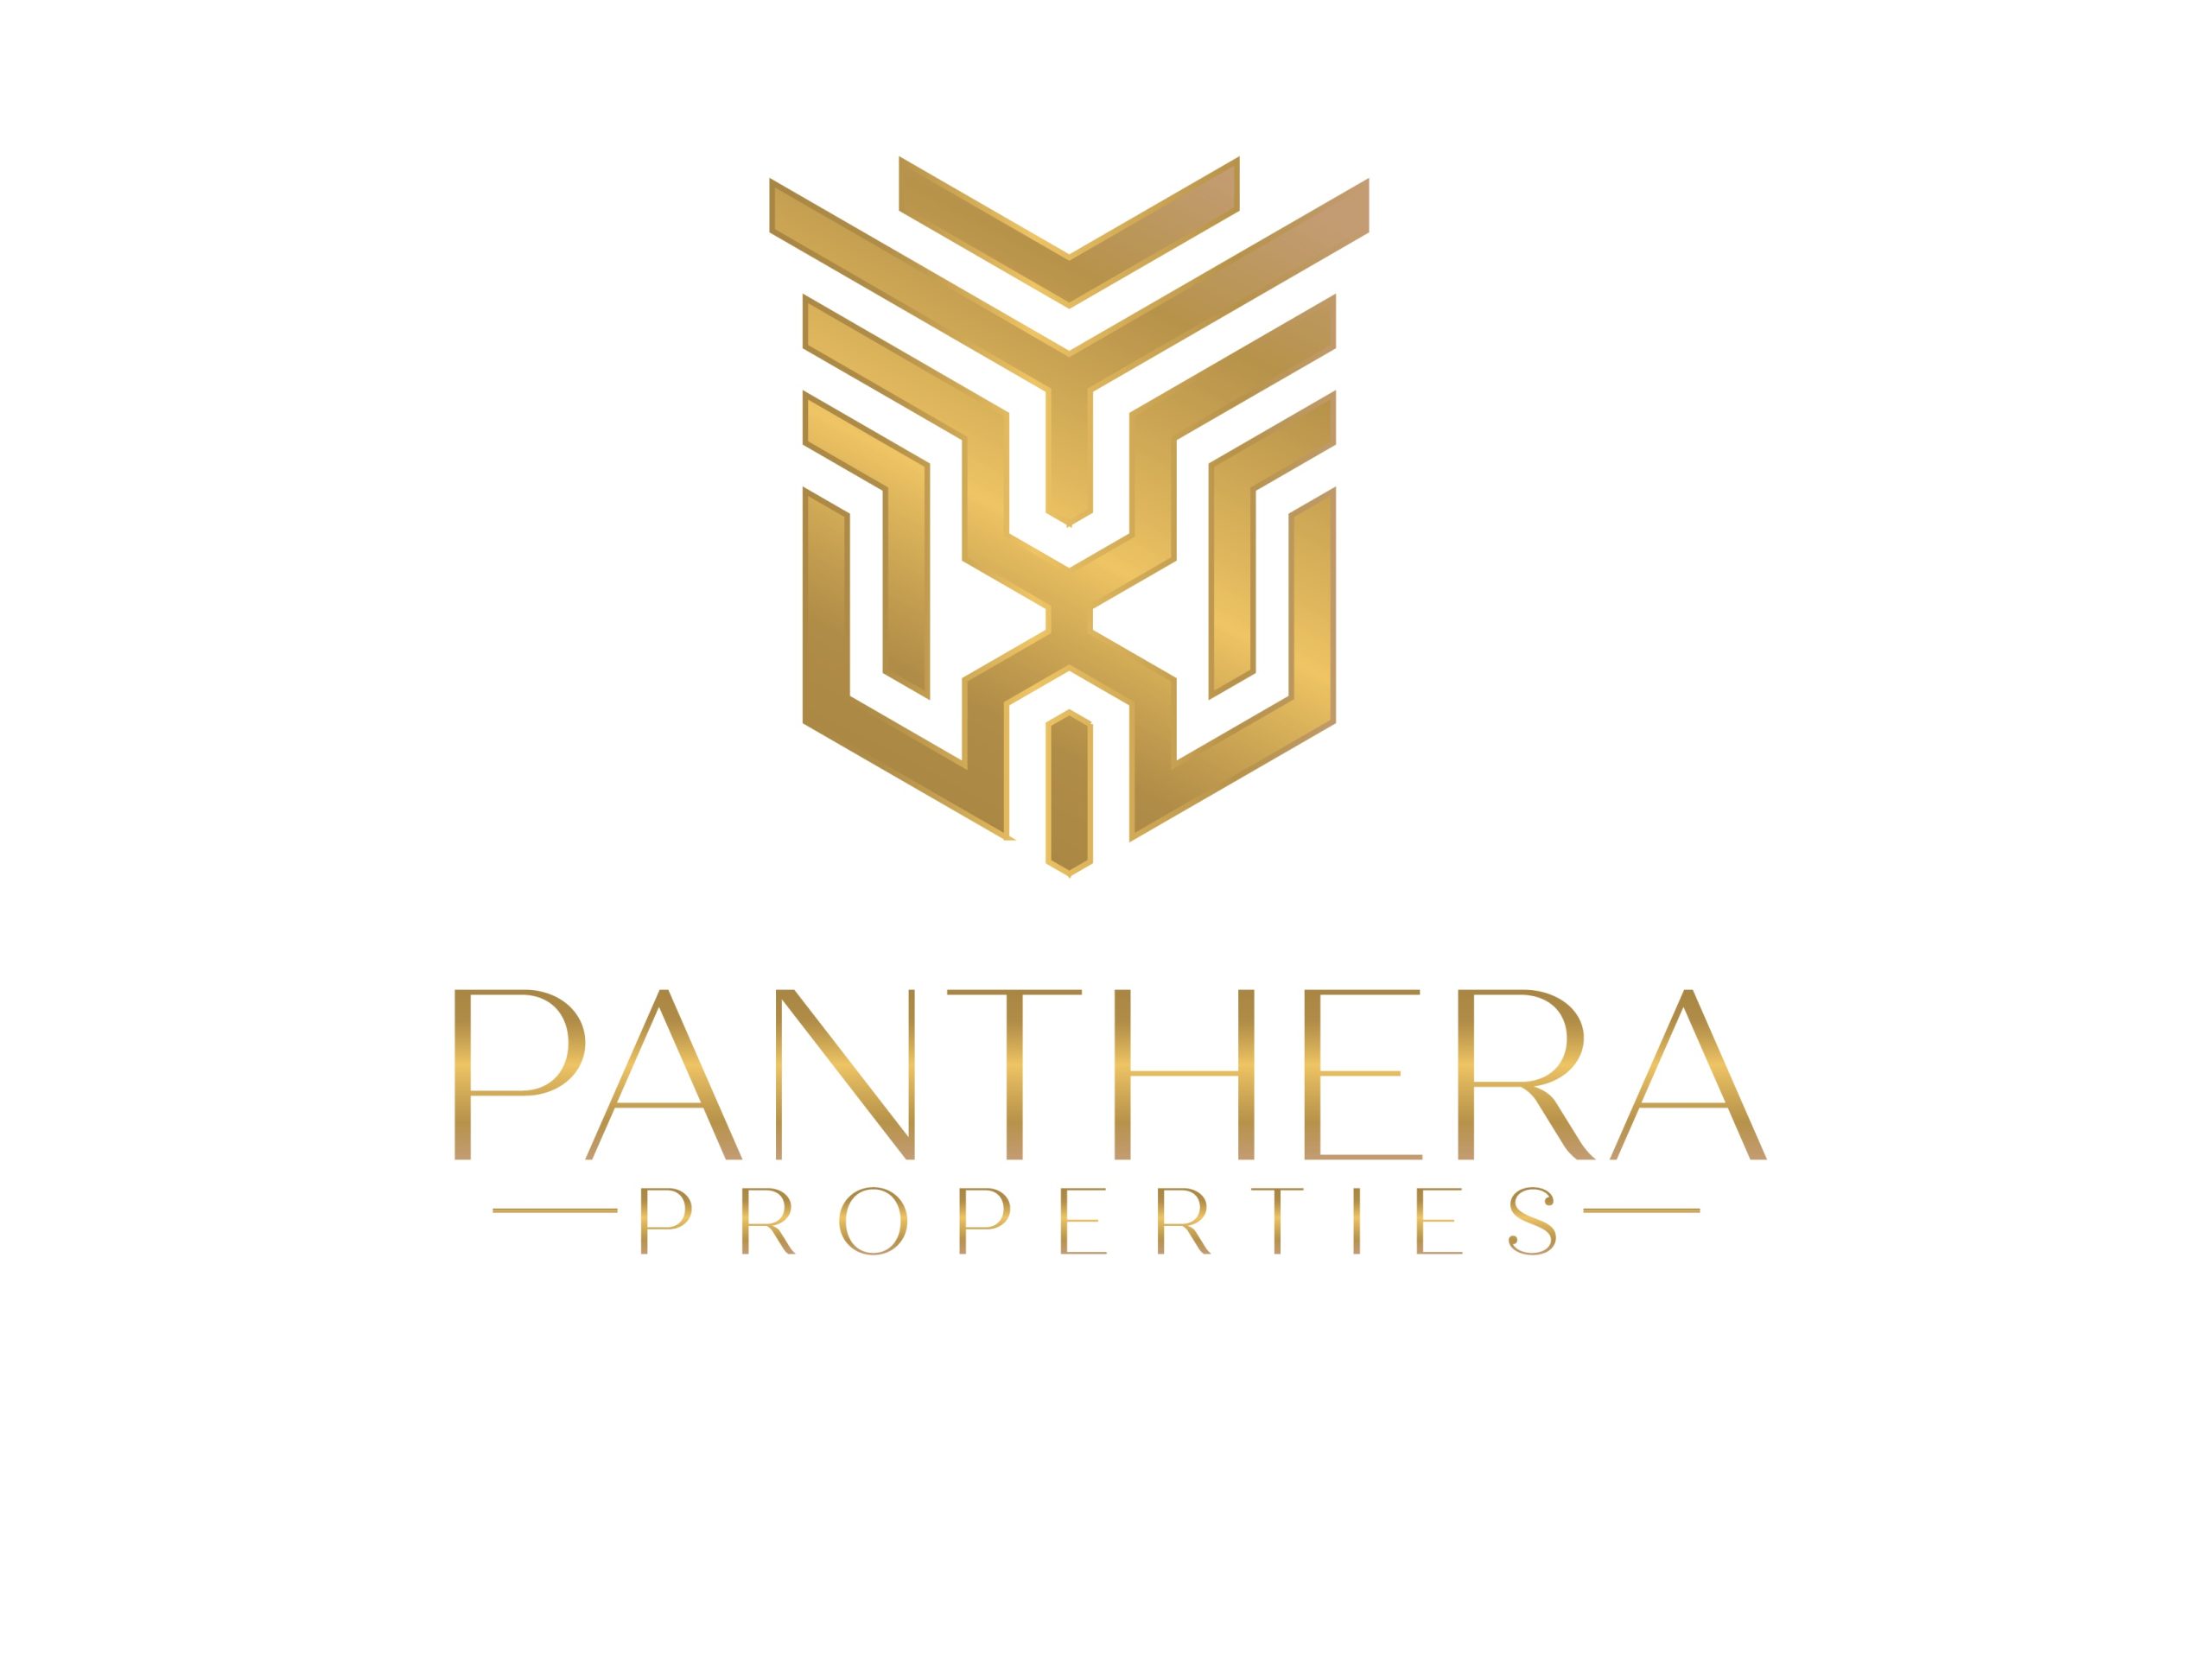 Panthera Properties LLC